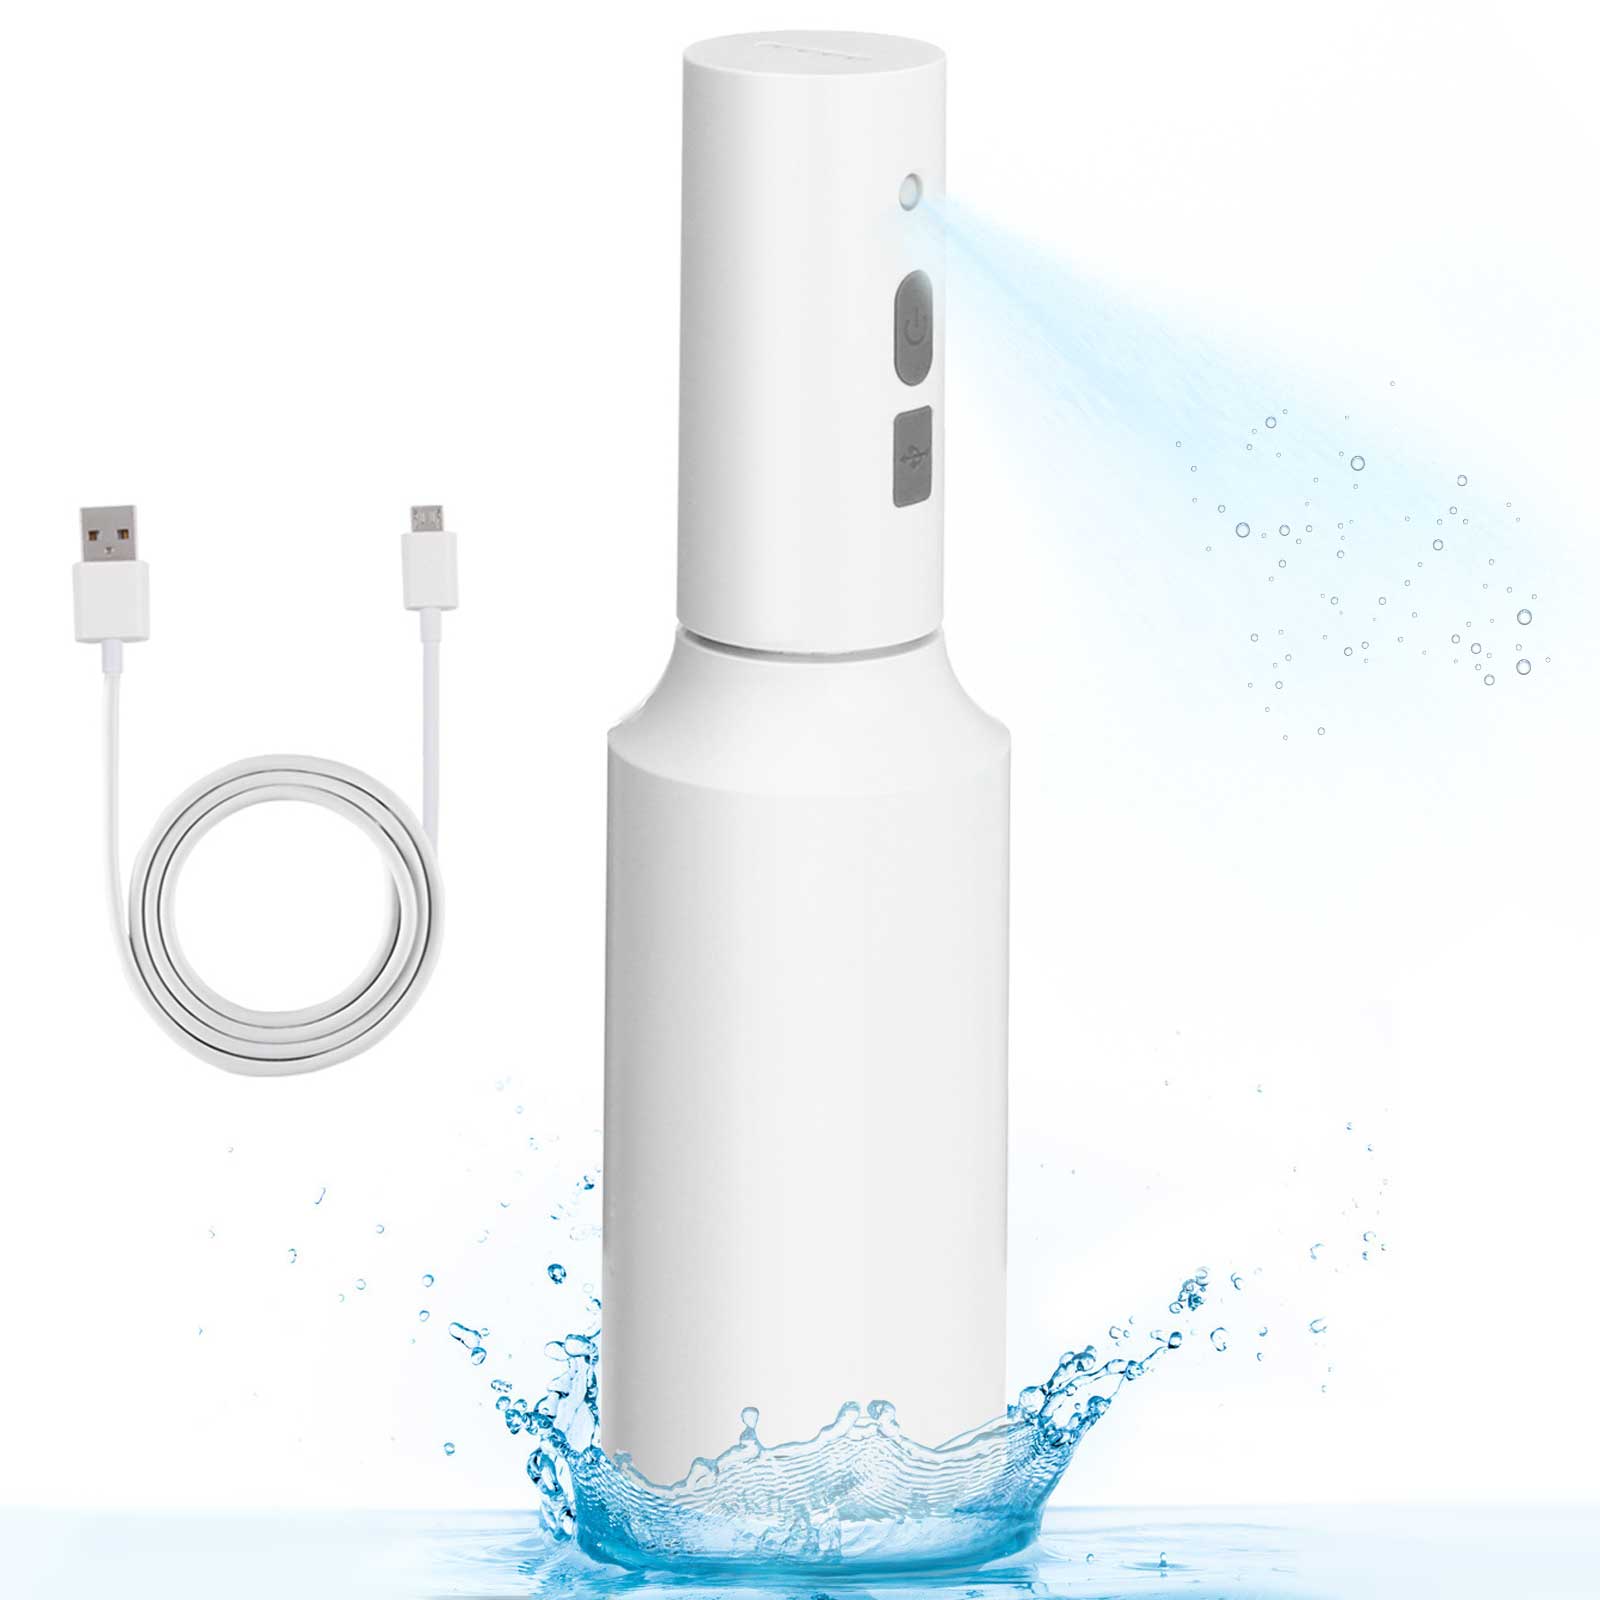 JETEVEN-750ml-Disinfectant-Sprayer-USB-Charging-Disinfectant-Soap-Dispenser-Dispenser-Handheld-Elect-1898962-1